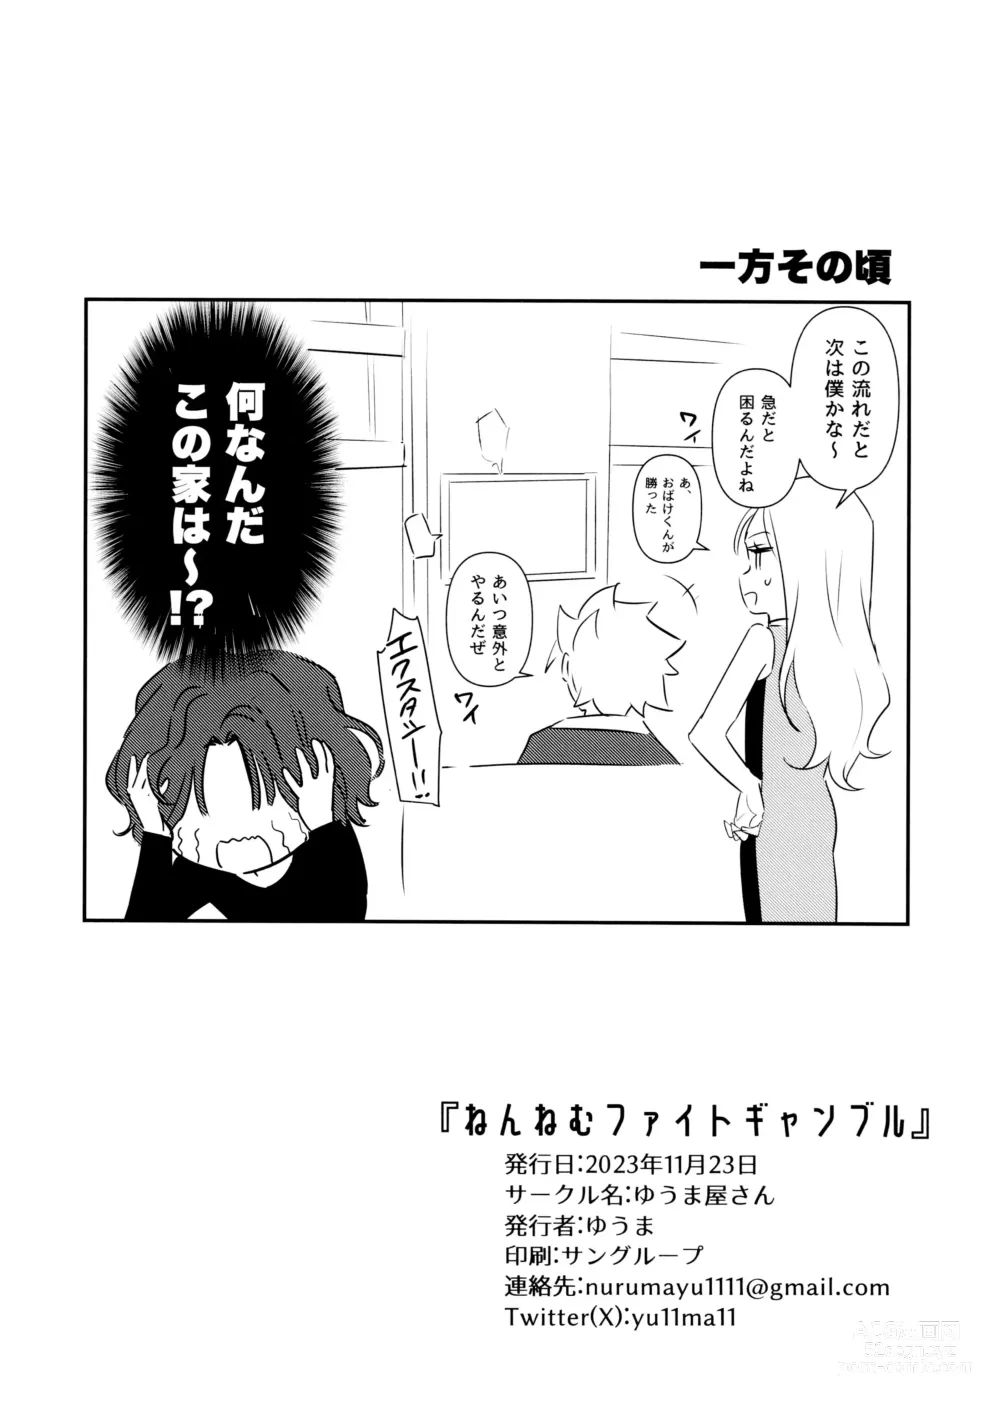 Page 17 of doujinshi Nennemu Fight Gambling